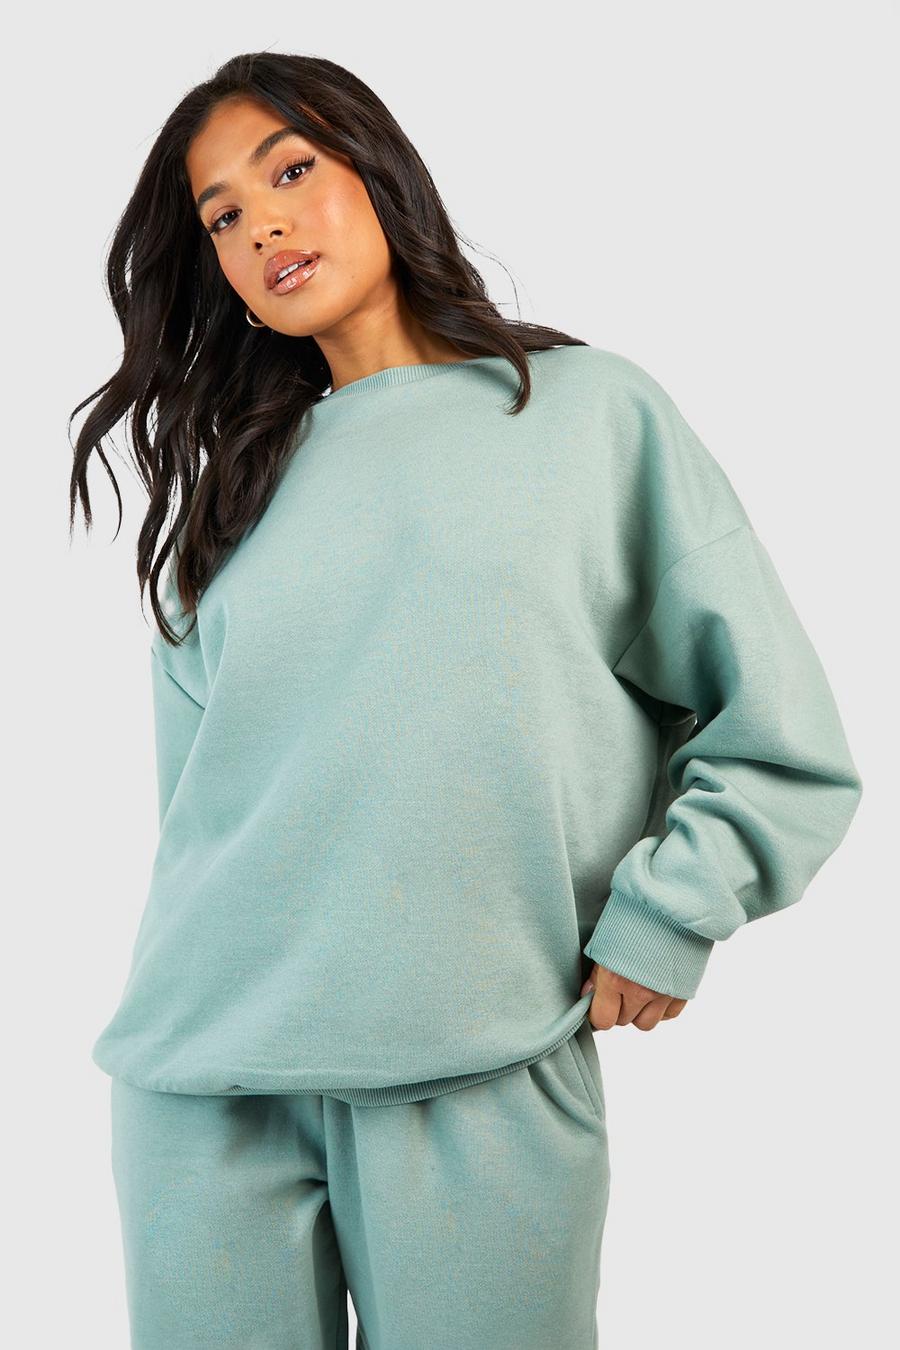 Sweatshirts | Women's Sweaters & Vintage Sweatshirts | boohoo UK